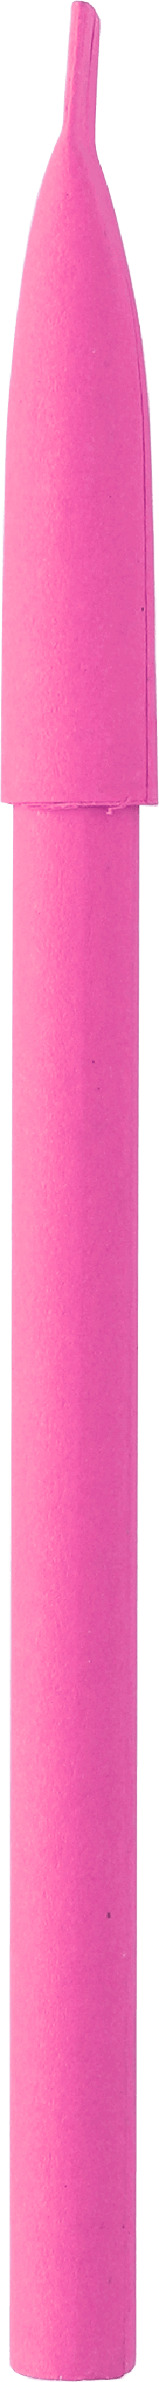 Ручка Kraft, розовая, вид сбоку